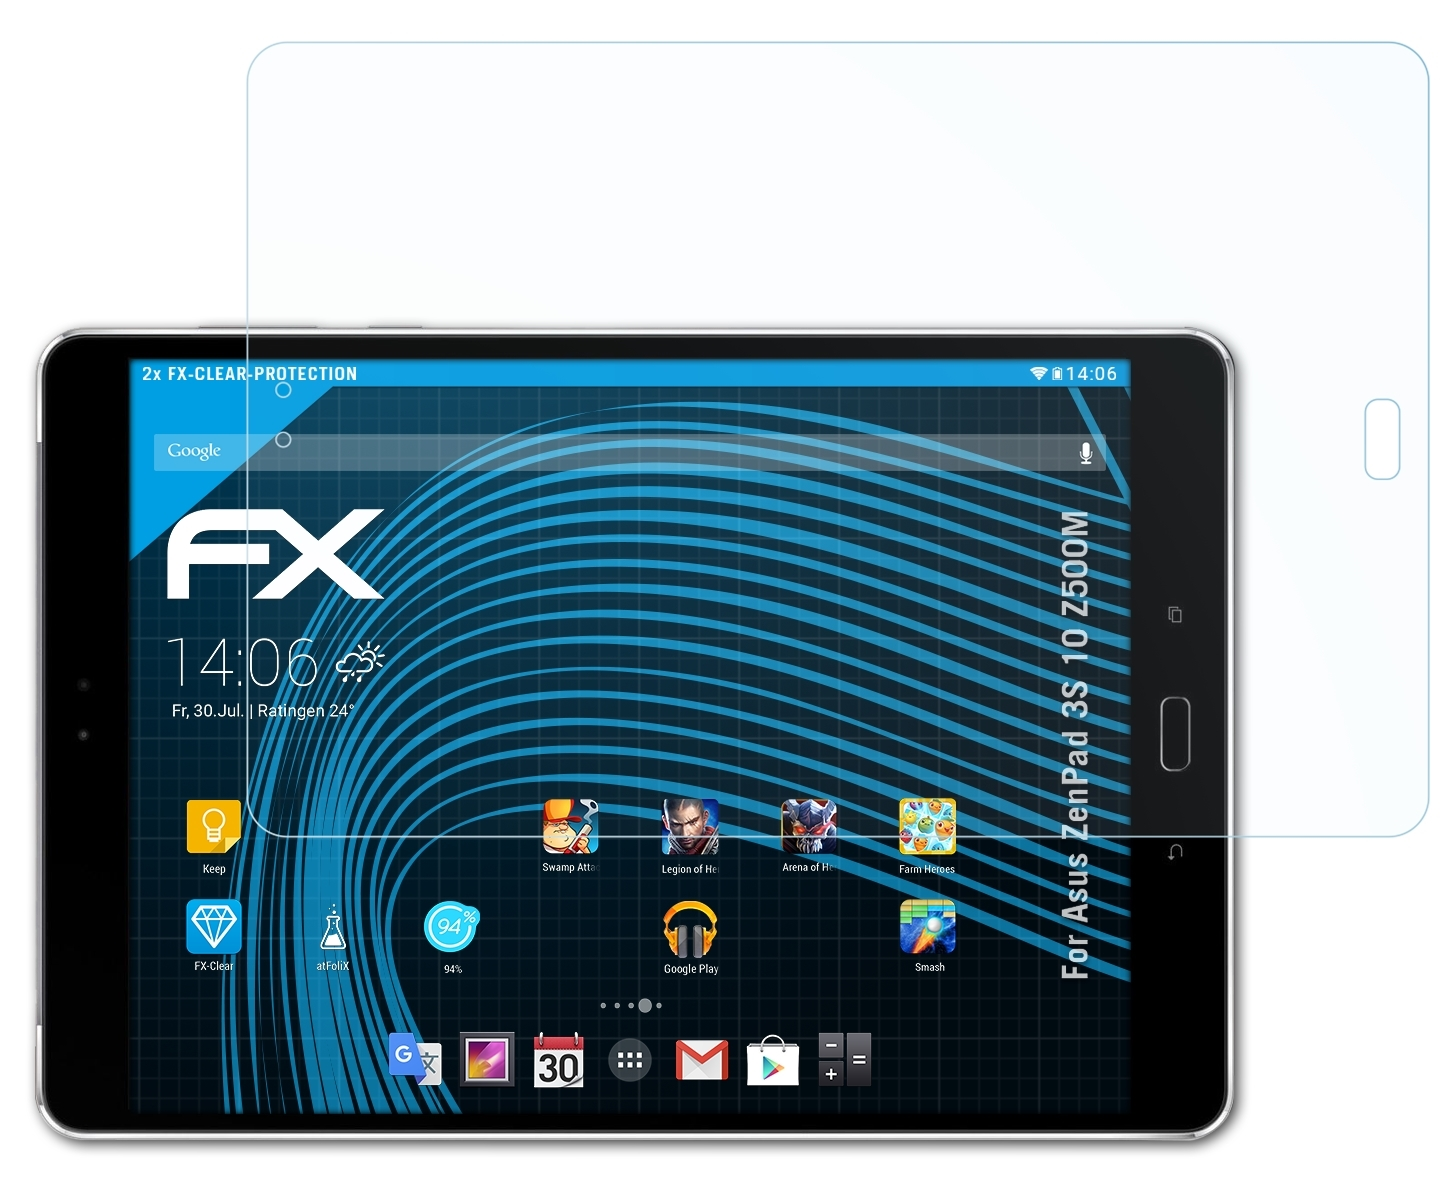 3S (Z500M)) ATFOLIX Asus FX-Clear Displayschutz(für ZenPad 2x 10